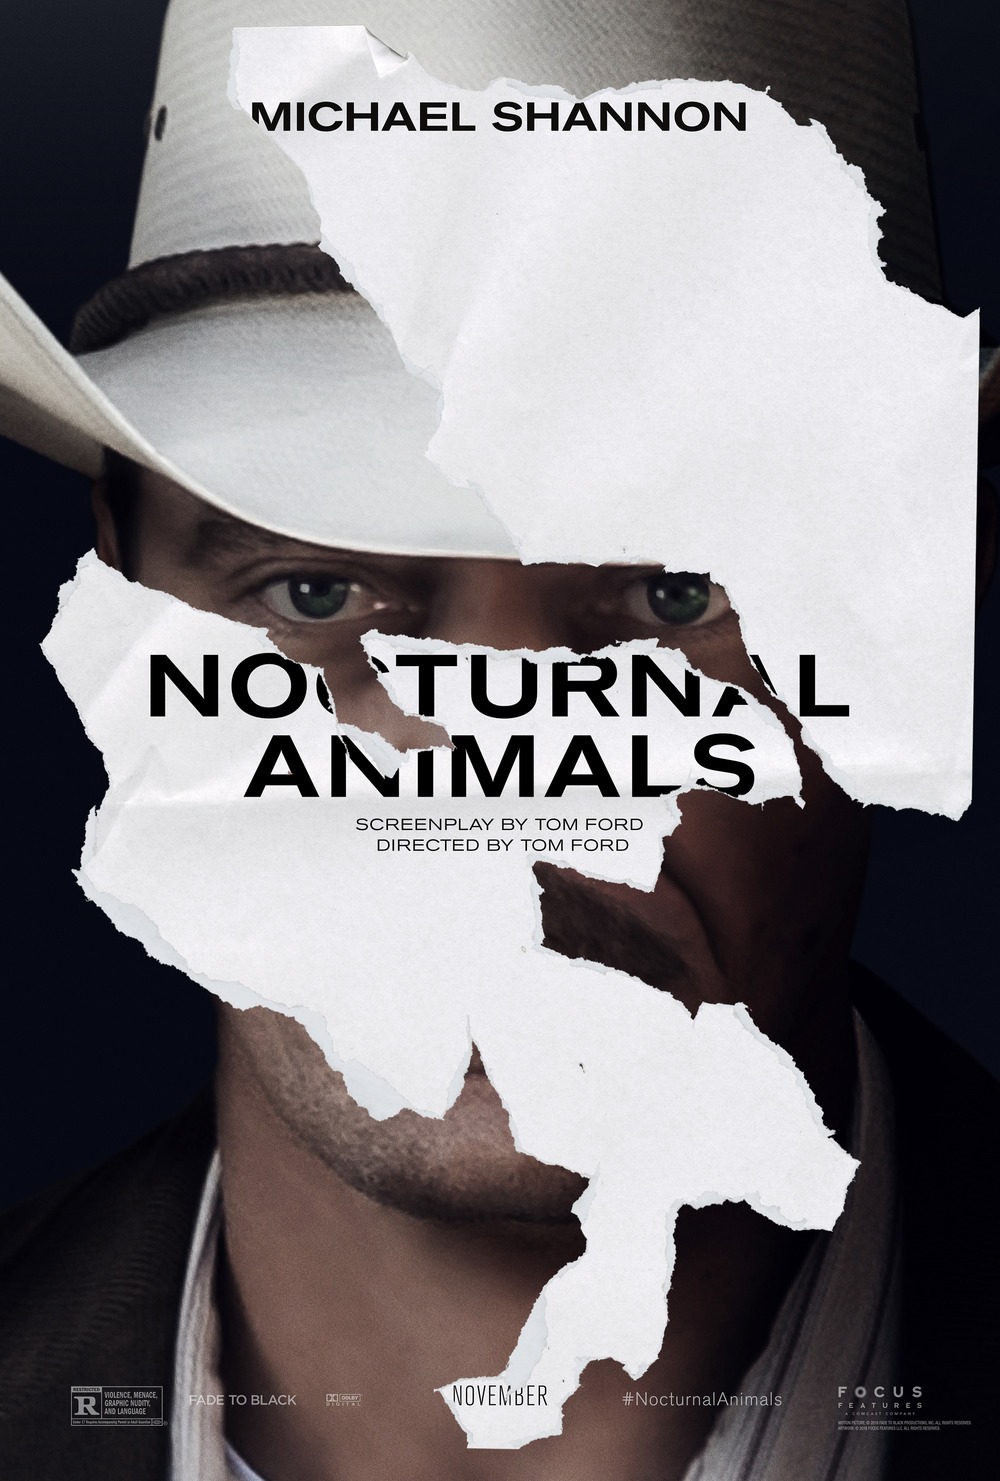 Nocturnal Animals DVD Release Date | Redbox, Netflix, iTunes, Amazon